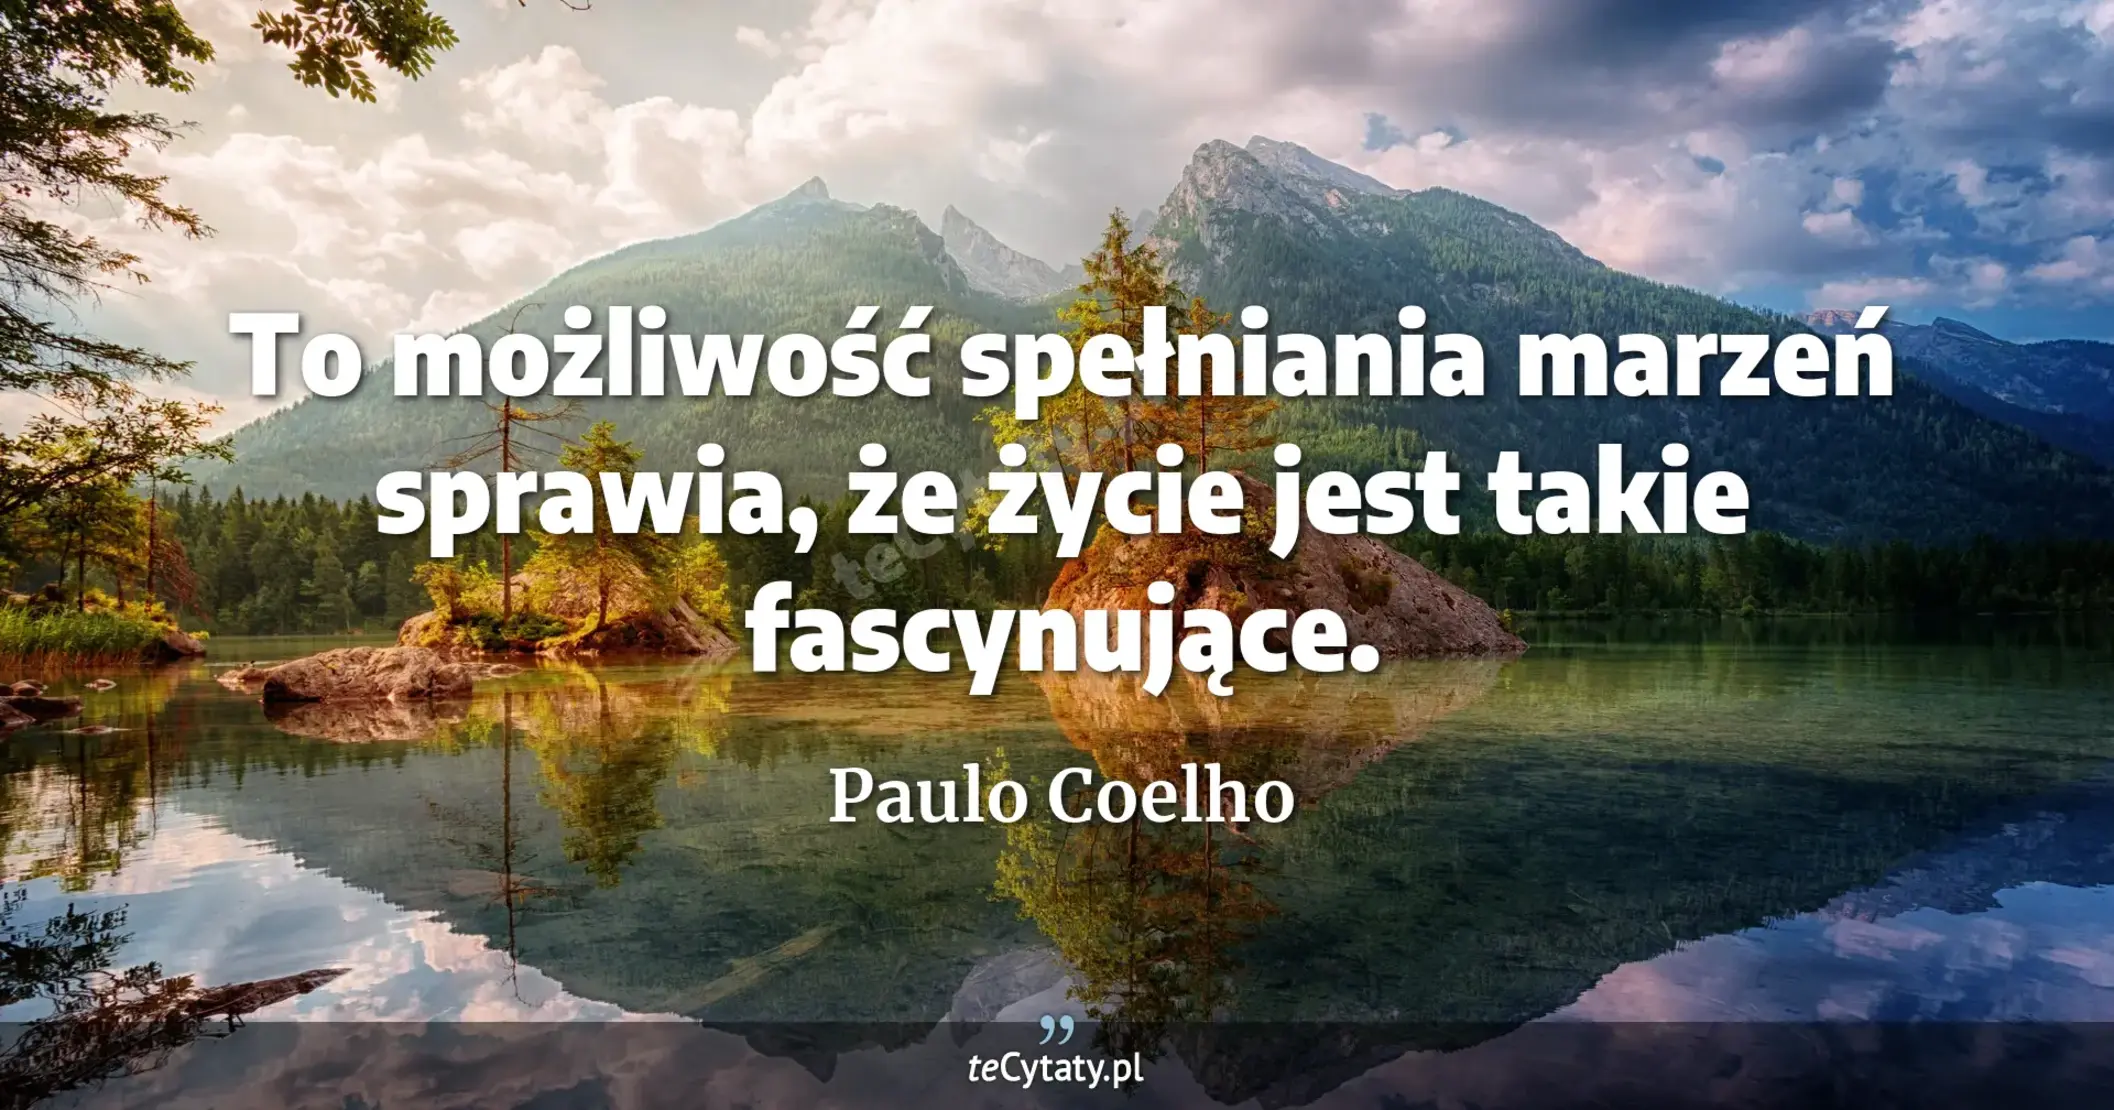 To możliwość spełniania marzeń sprawia, że życie jest takie fascynujące. - Paulo Coelho